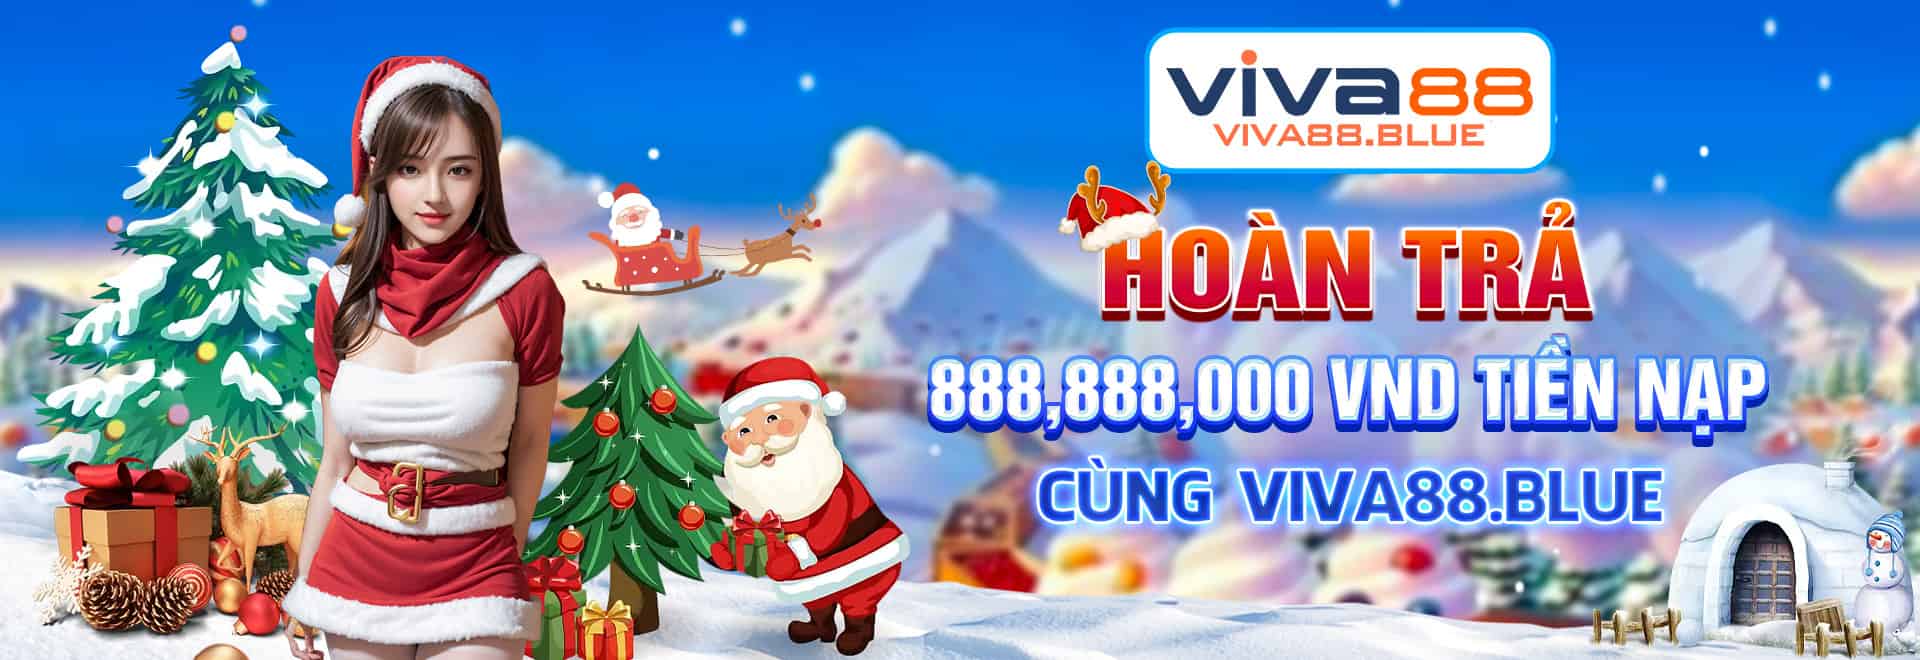 Hoàn trả 888,888,000 VND tiền nạp cùng Viva88.blue